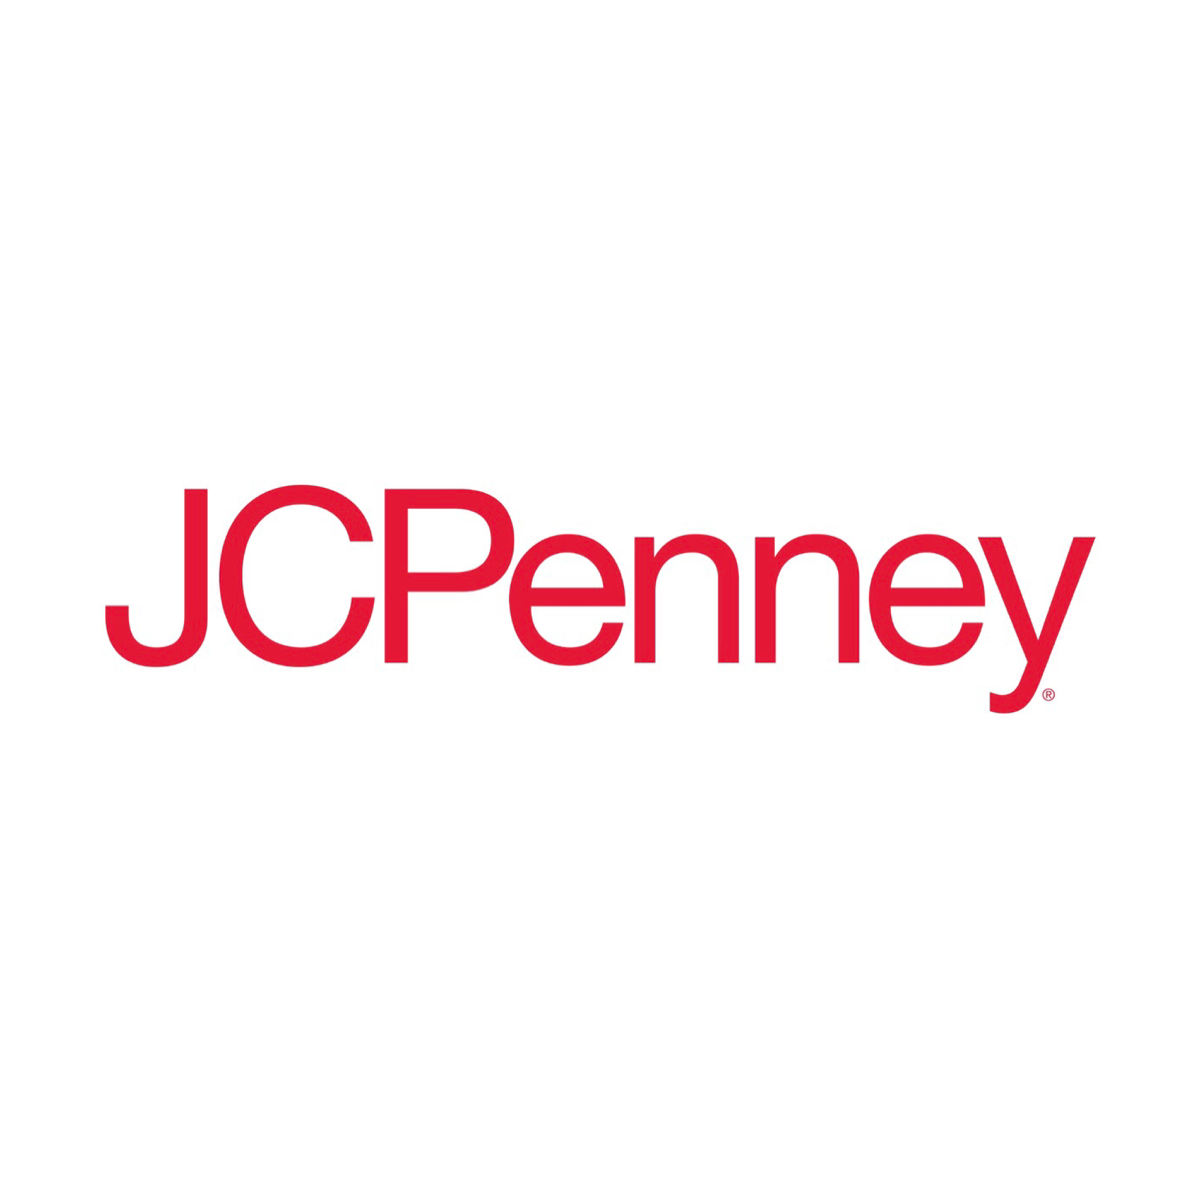 JCPenney Rewards